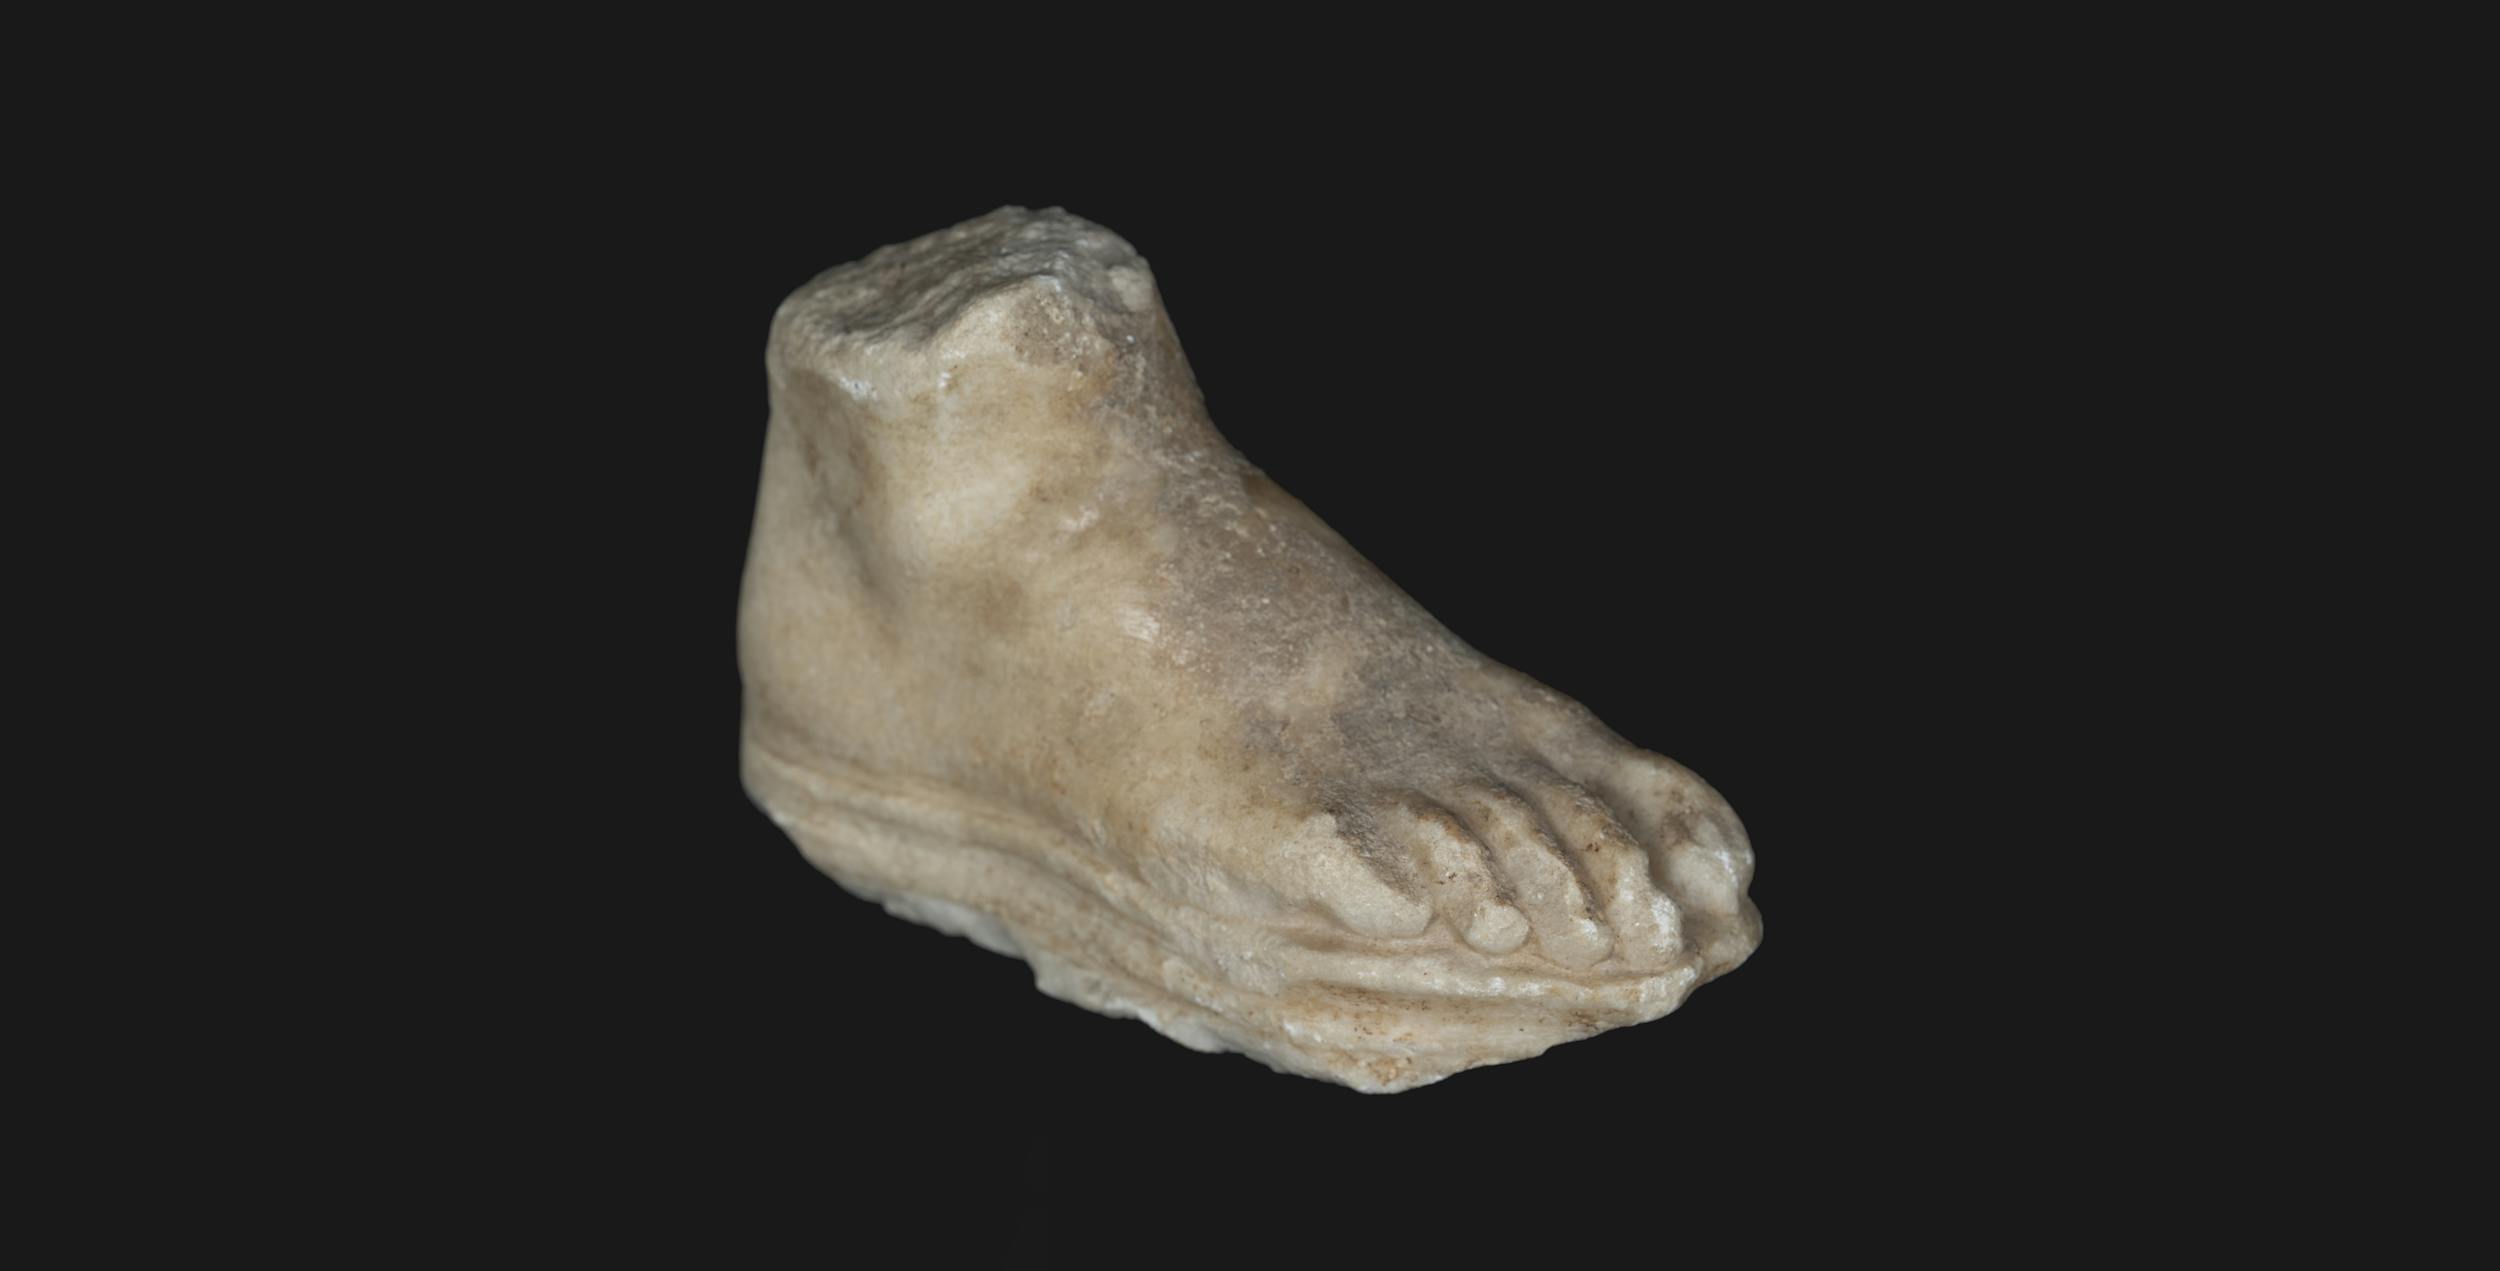 Piede destro con suola di sandalo, I secolo d.C. marmo microcristallino, Gallerie degli Uffizi